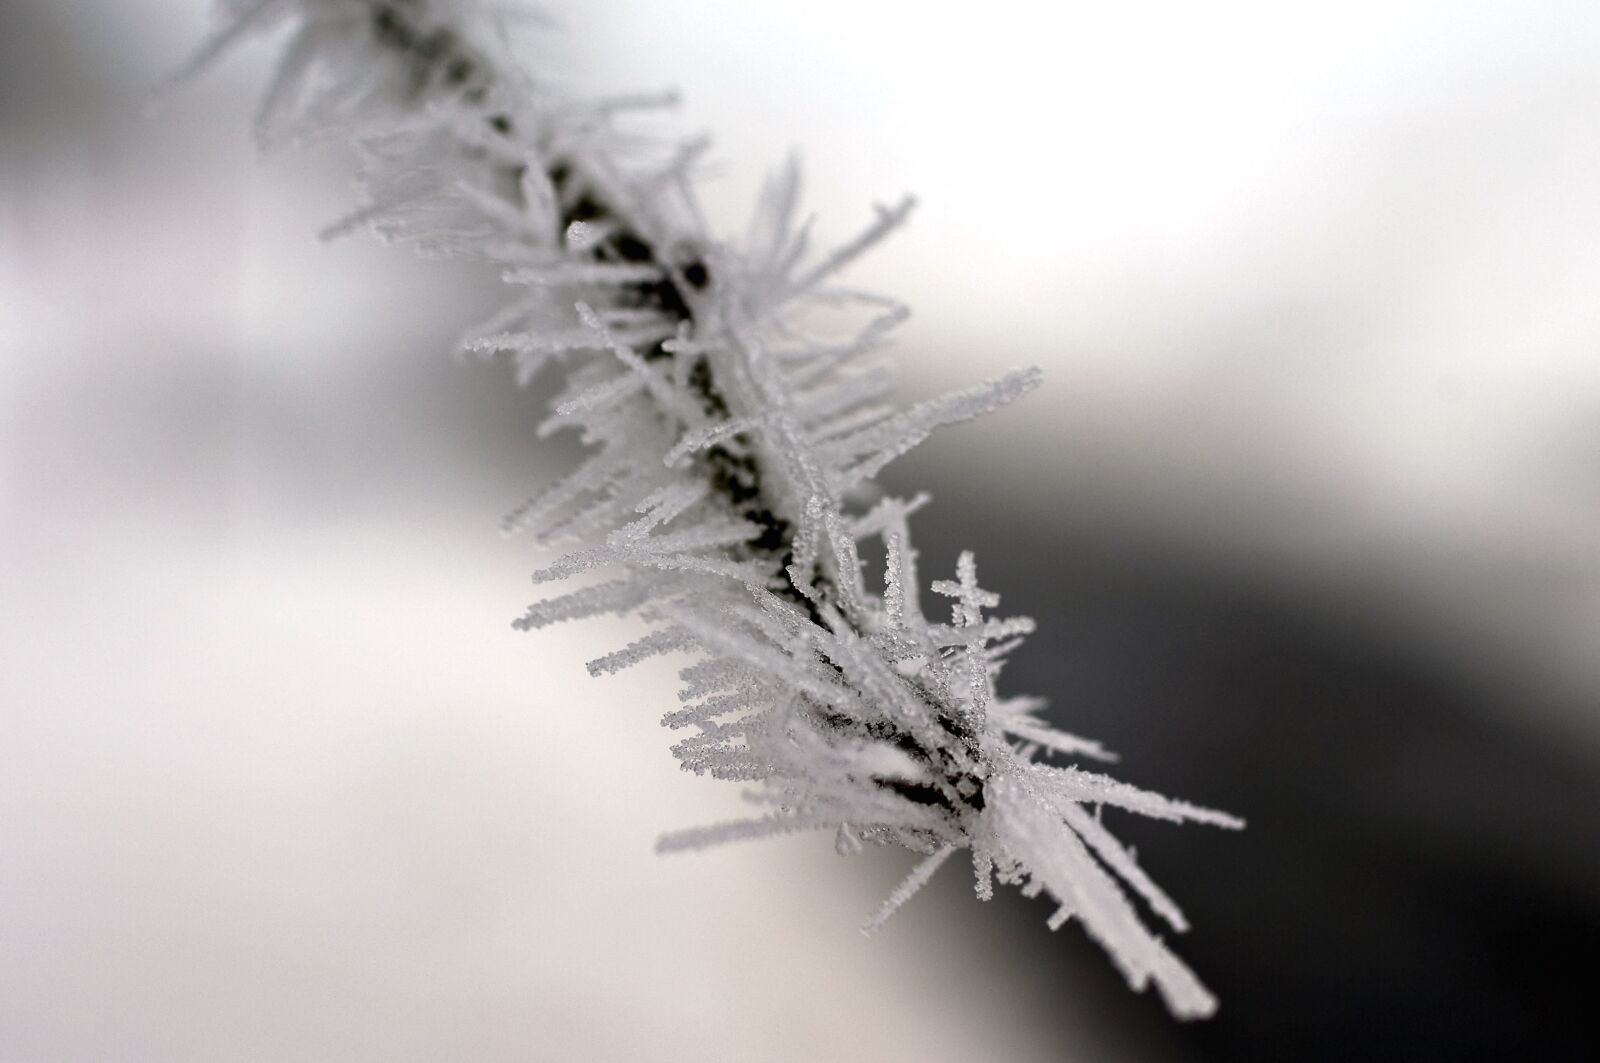 Nikon D2X sample photo. Pine, snow, snowflakes, weather photography